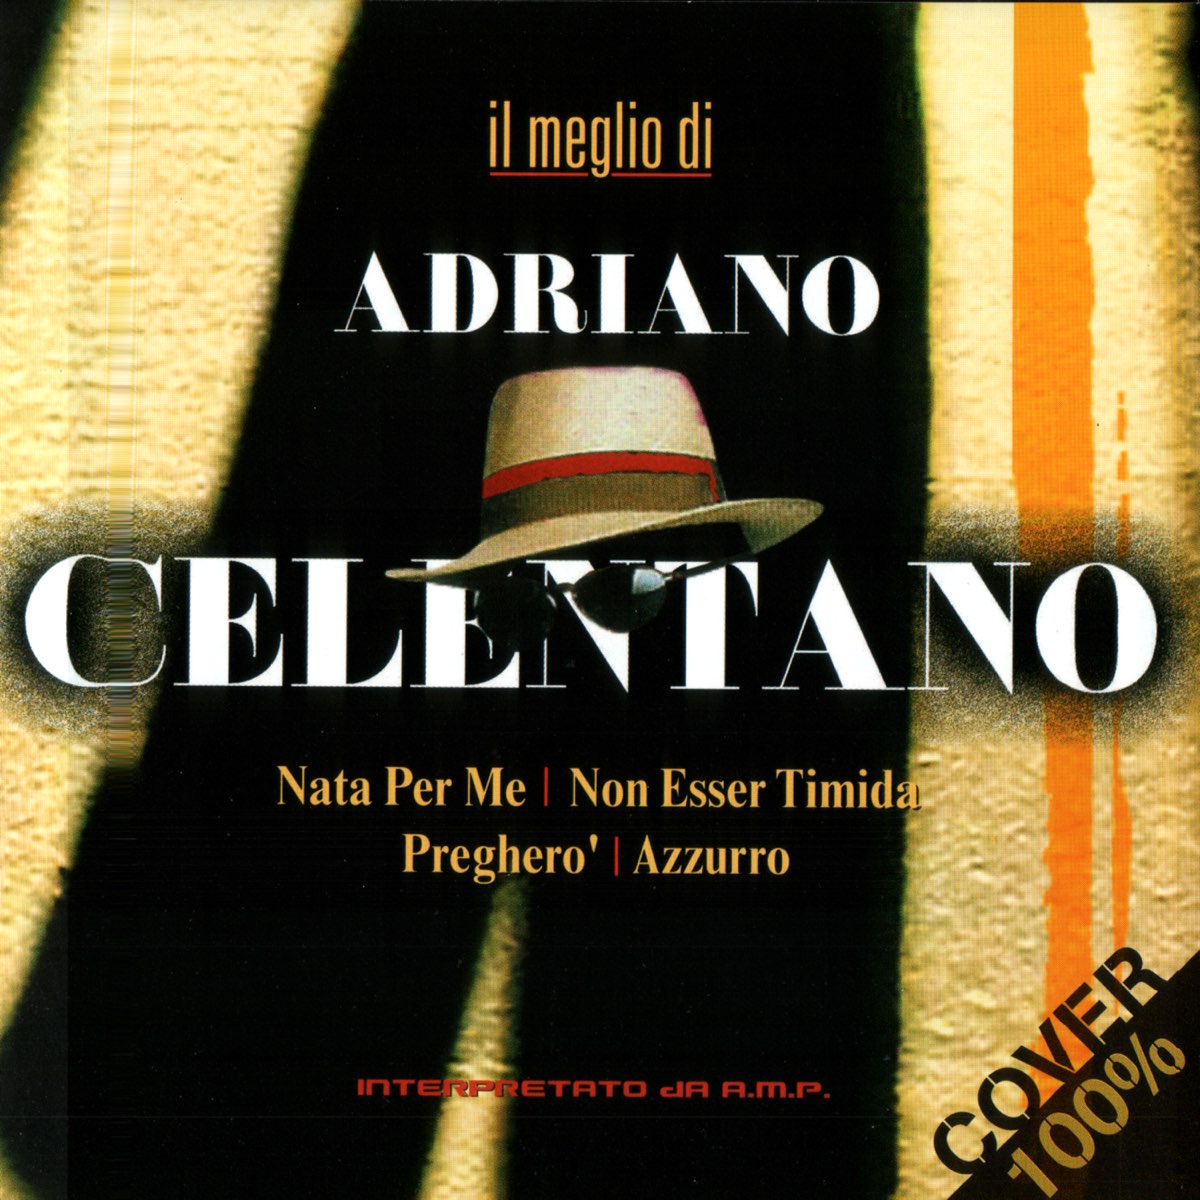 Il meglio di Adriano Celentano - 100% Cover - Album by A.M.P. - Apple Music